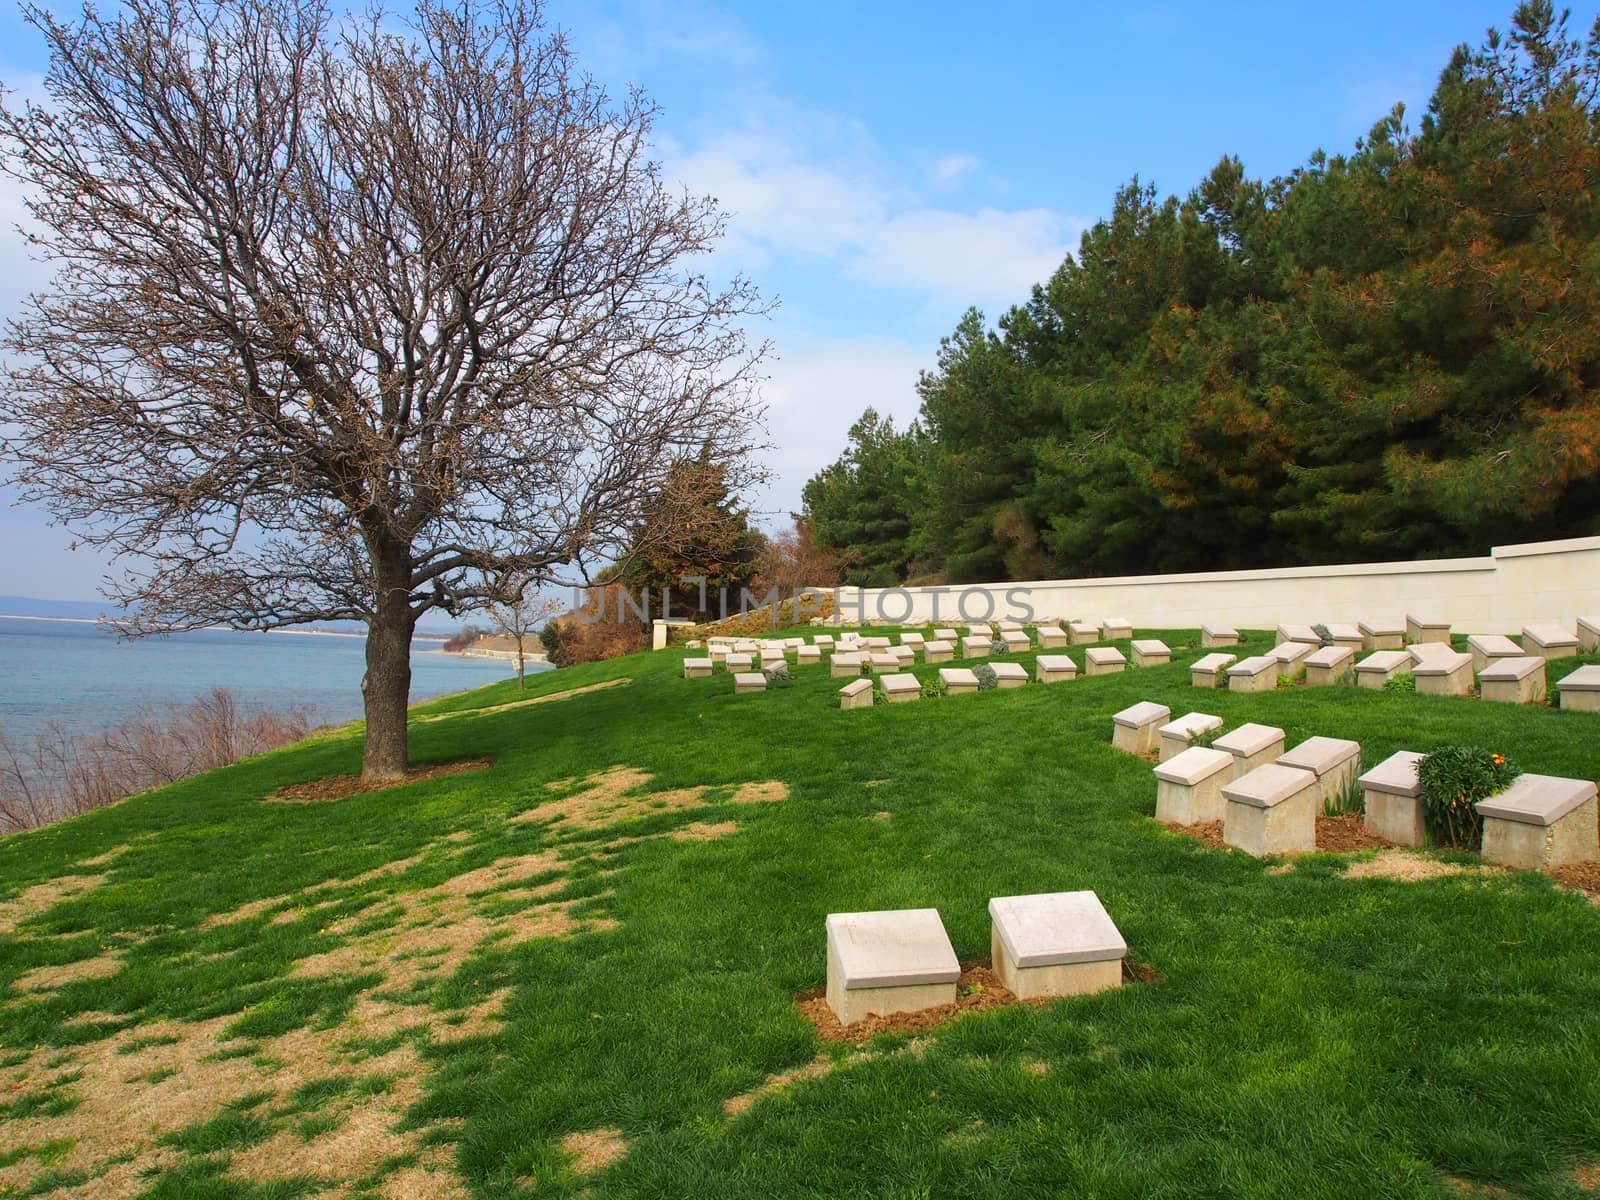 Ari Burnu war cemetery and memorial at Gallipoli